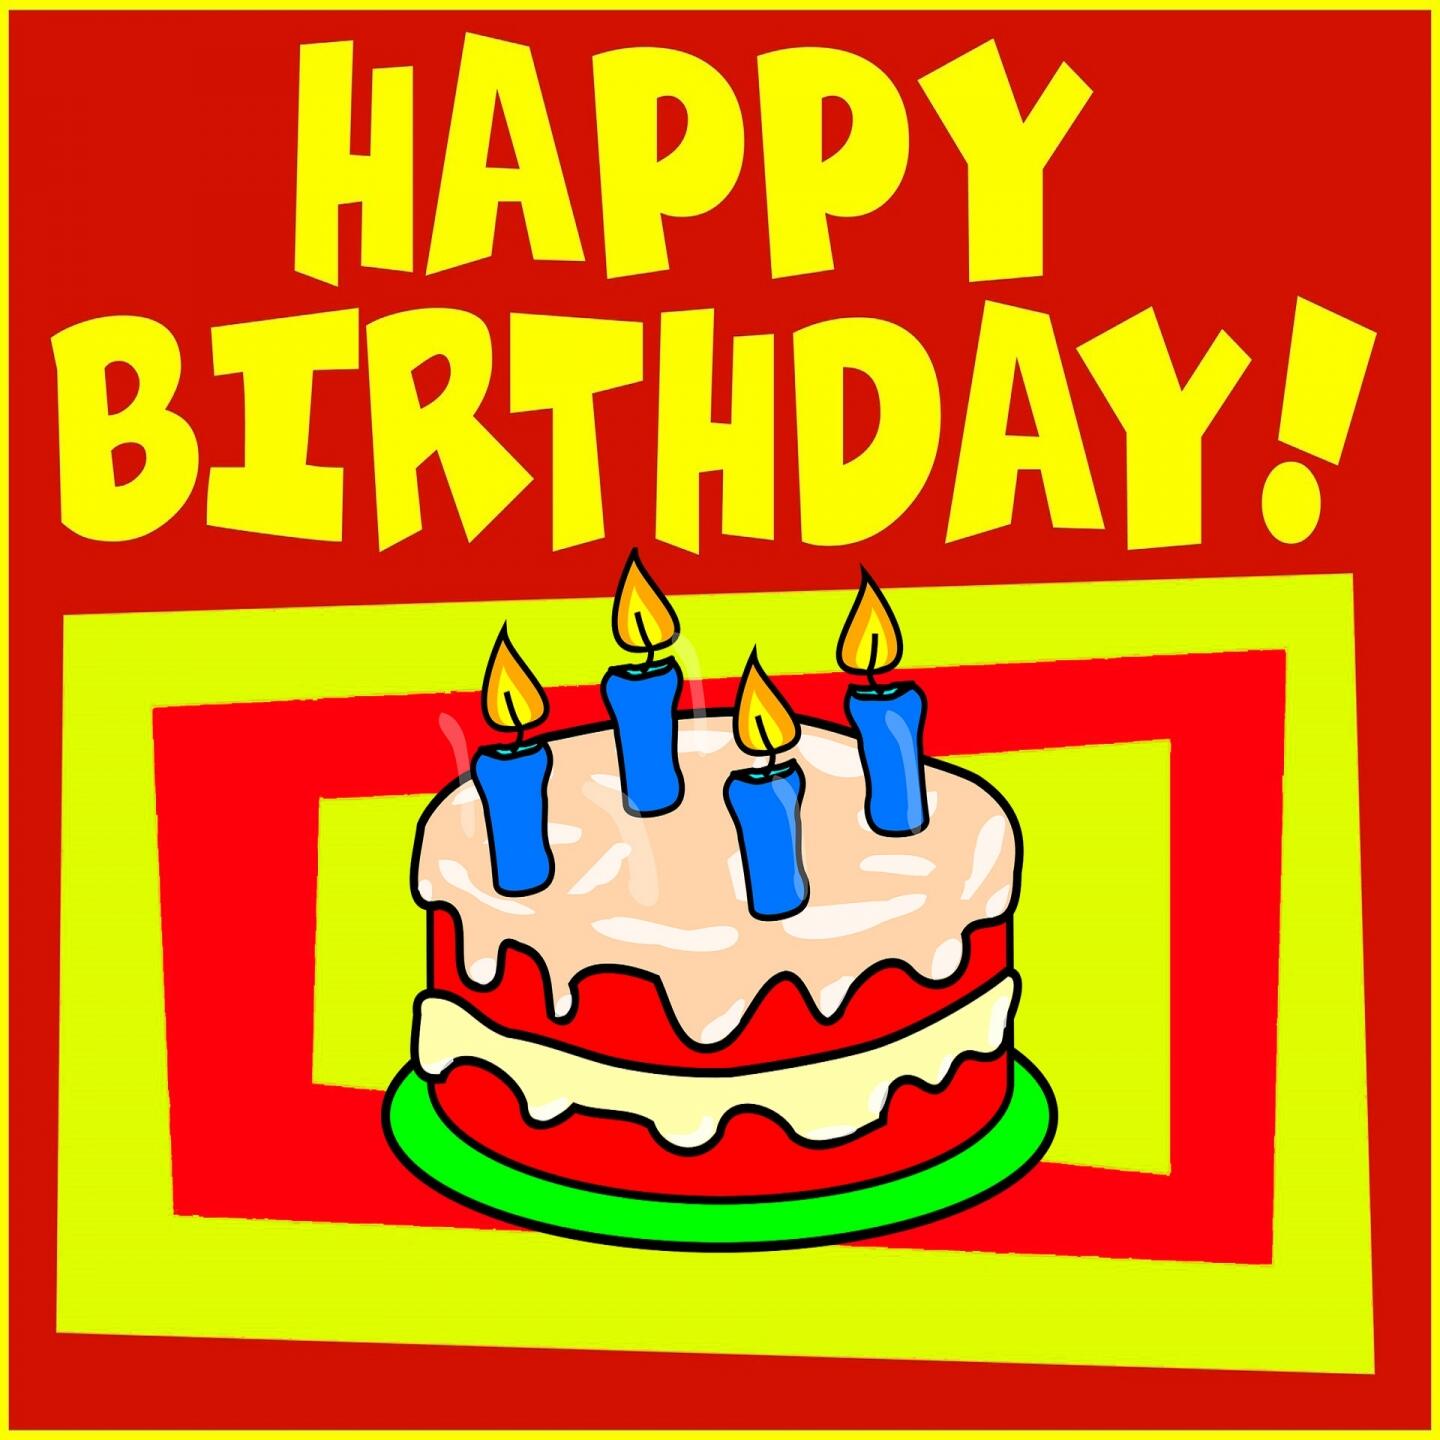 Happy Birthday - Happy Birthday! | iHeart